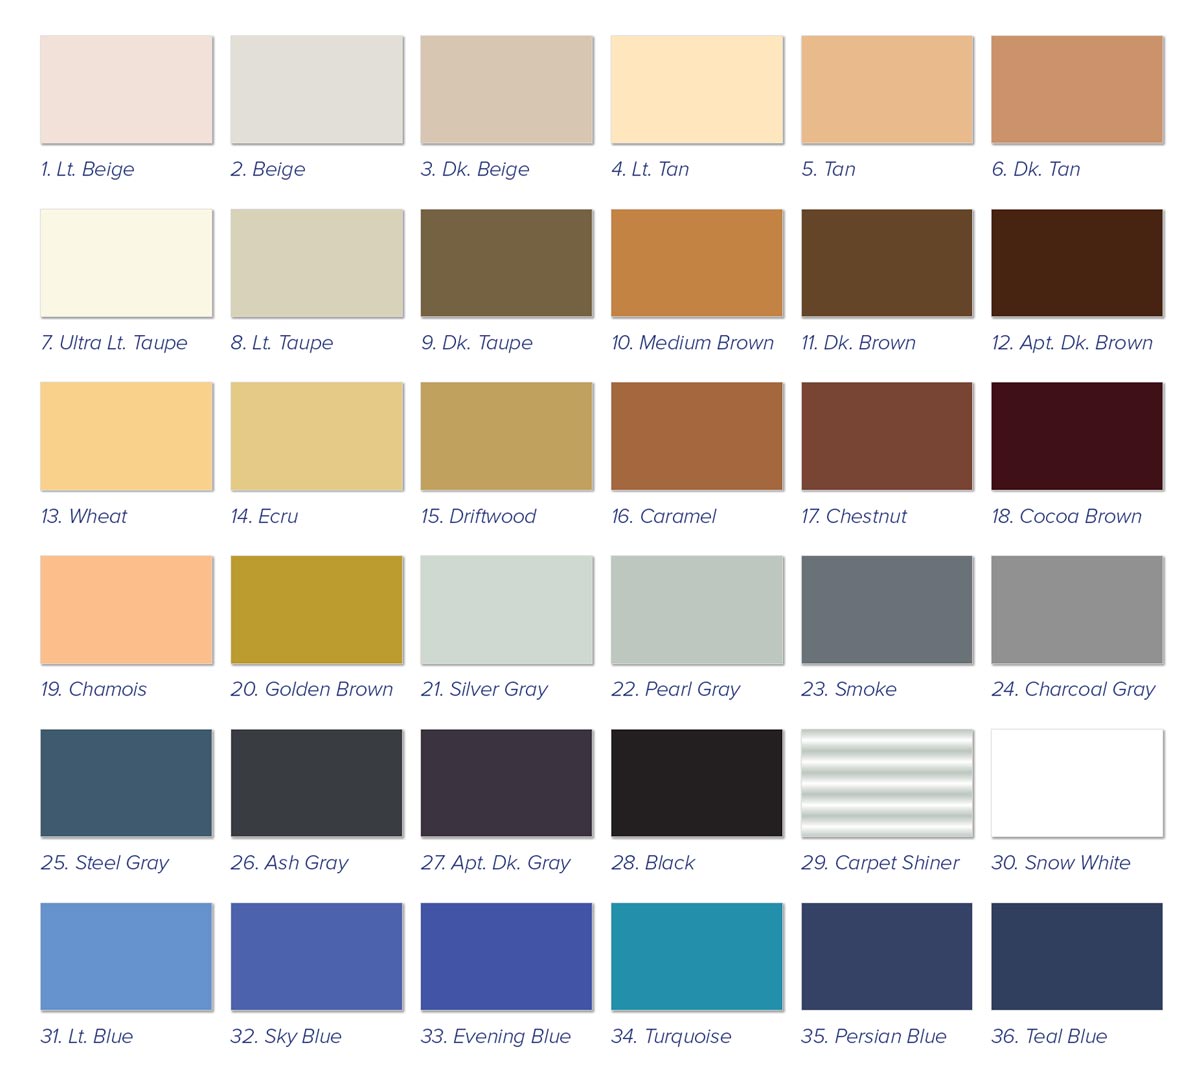 5th Generation Carpet Dye Americolor Dyes